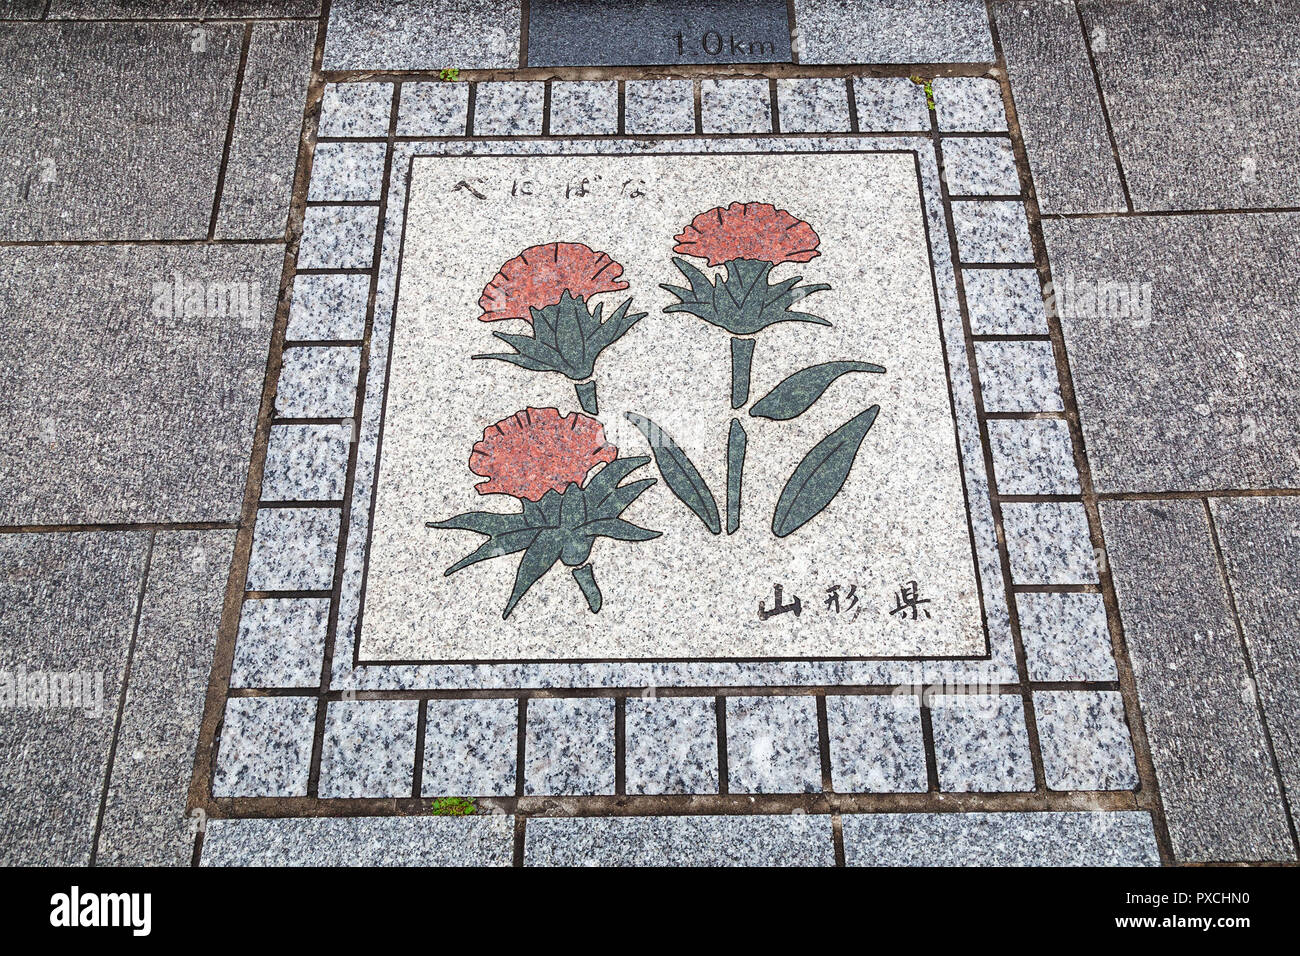 Giapponese Arte sul marciapiede che mostra le distanze in km Foto Stock